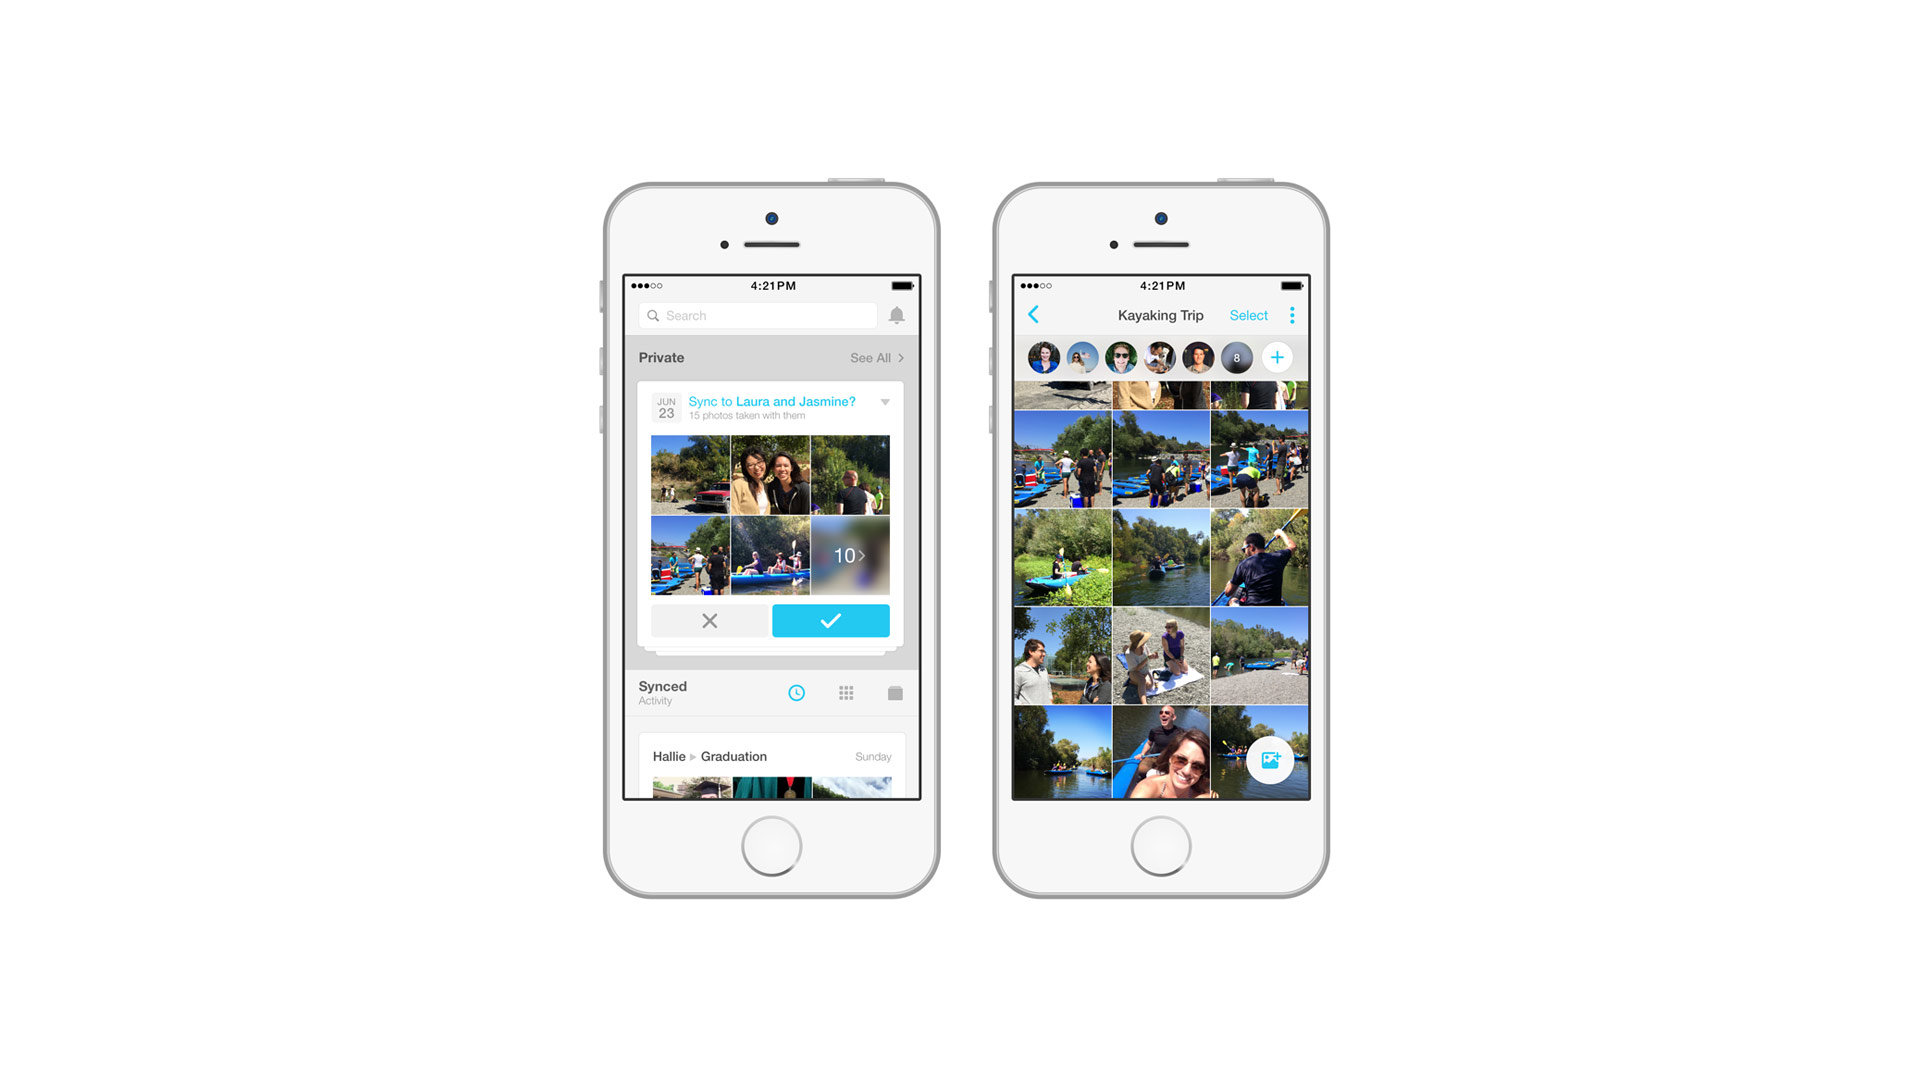 Facebook desarrolló una nueva aplicación para compartir imágenes con amigos de forma segura y privada